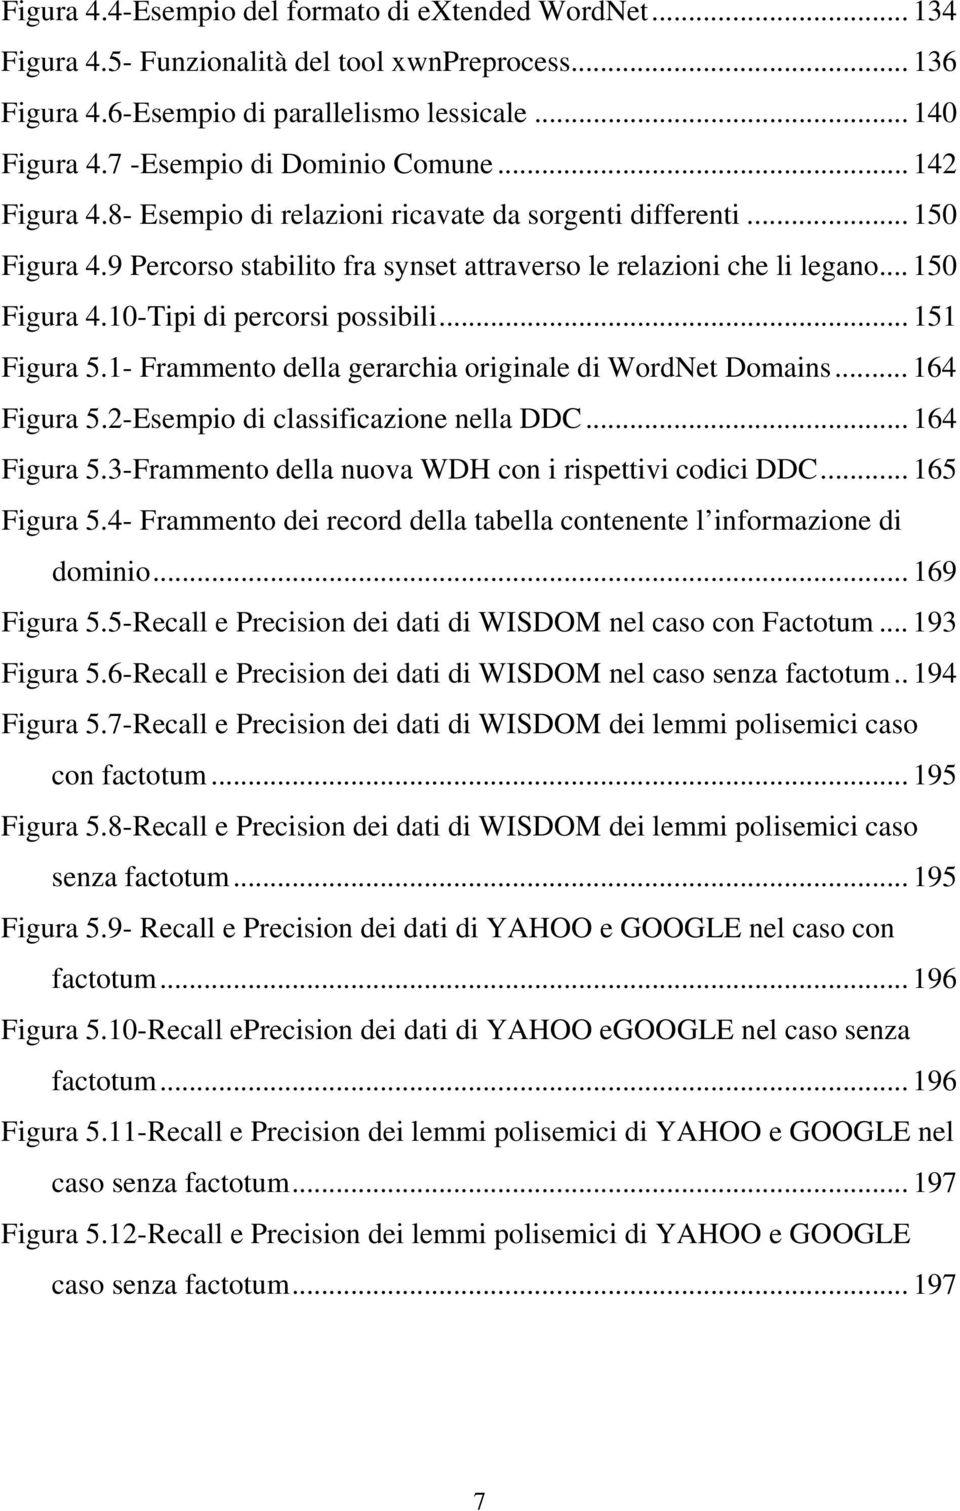 .. 150 Figura 4.10-Tipi di percorsi possibili... 151 Figura 5.1- Frammento della gerarchia originale di WordNet Domains... 164 Figura 5.2-Esempio di classificazione nella DDC... 164 Figura 5.3-Frammento della nuova WDH con i rispettivi codici DDC.